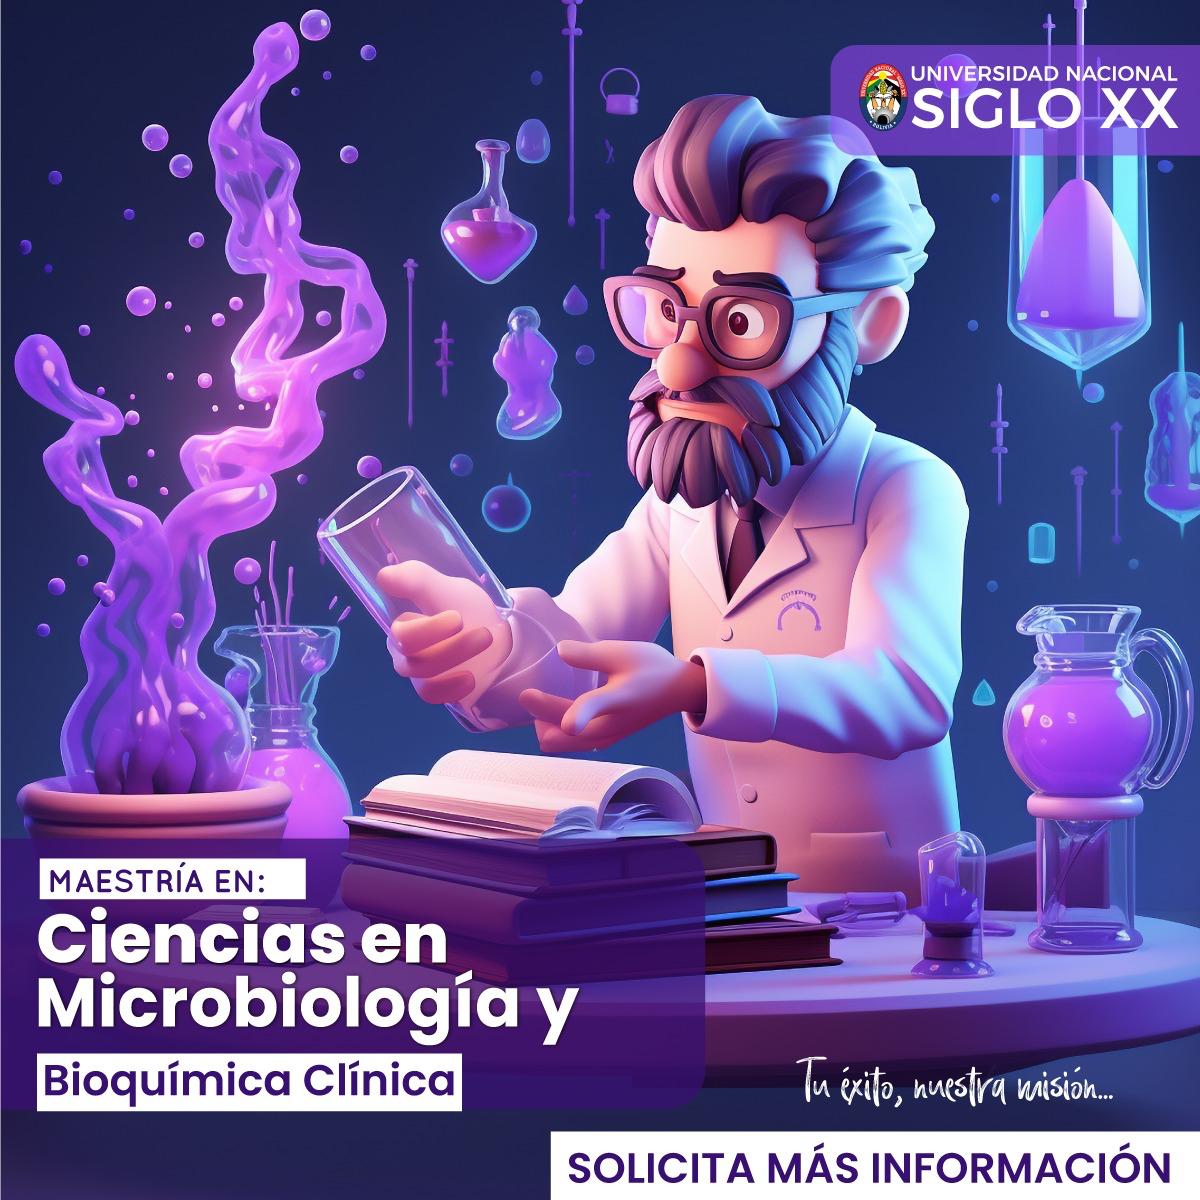 Maestría MAESTRIA EN CIENCIAS EN MICROBIOLOGÍA Y BIOQUÍMICA CLÍNICA